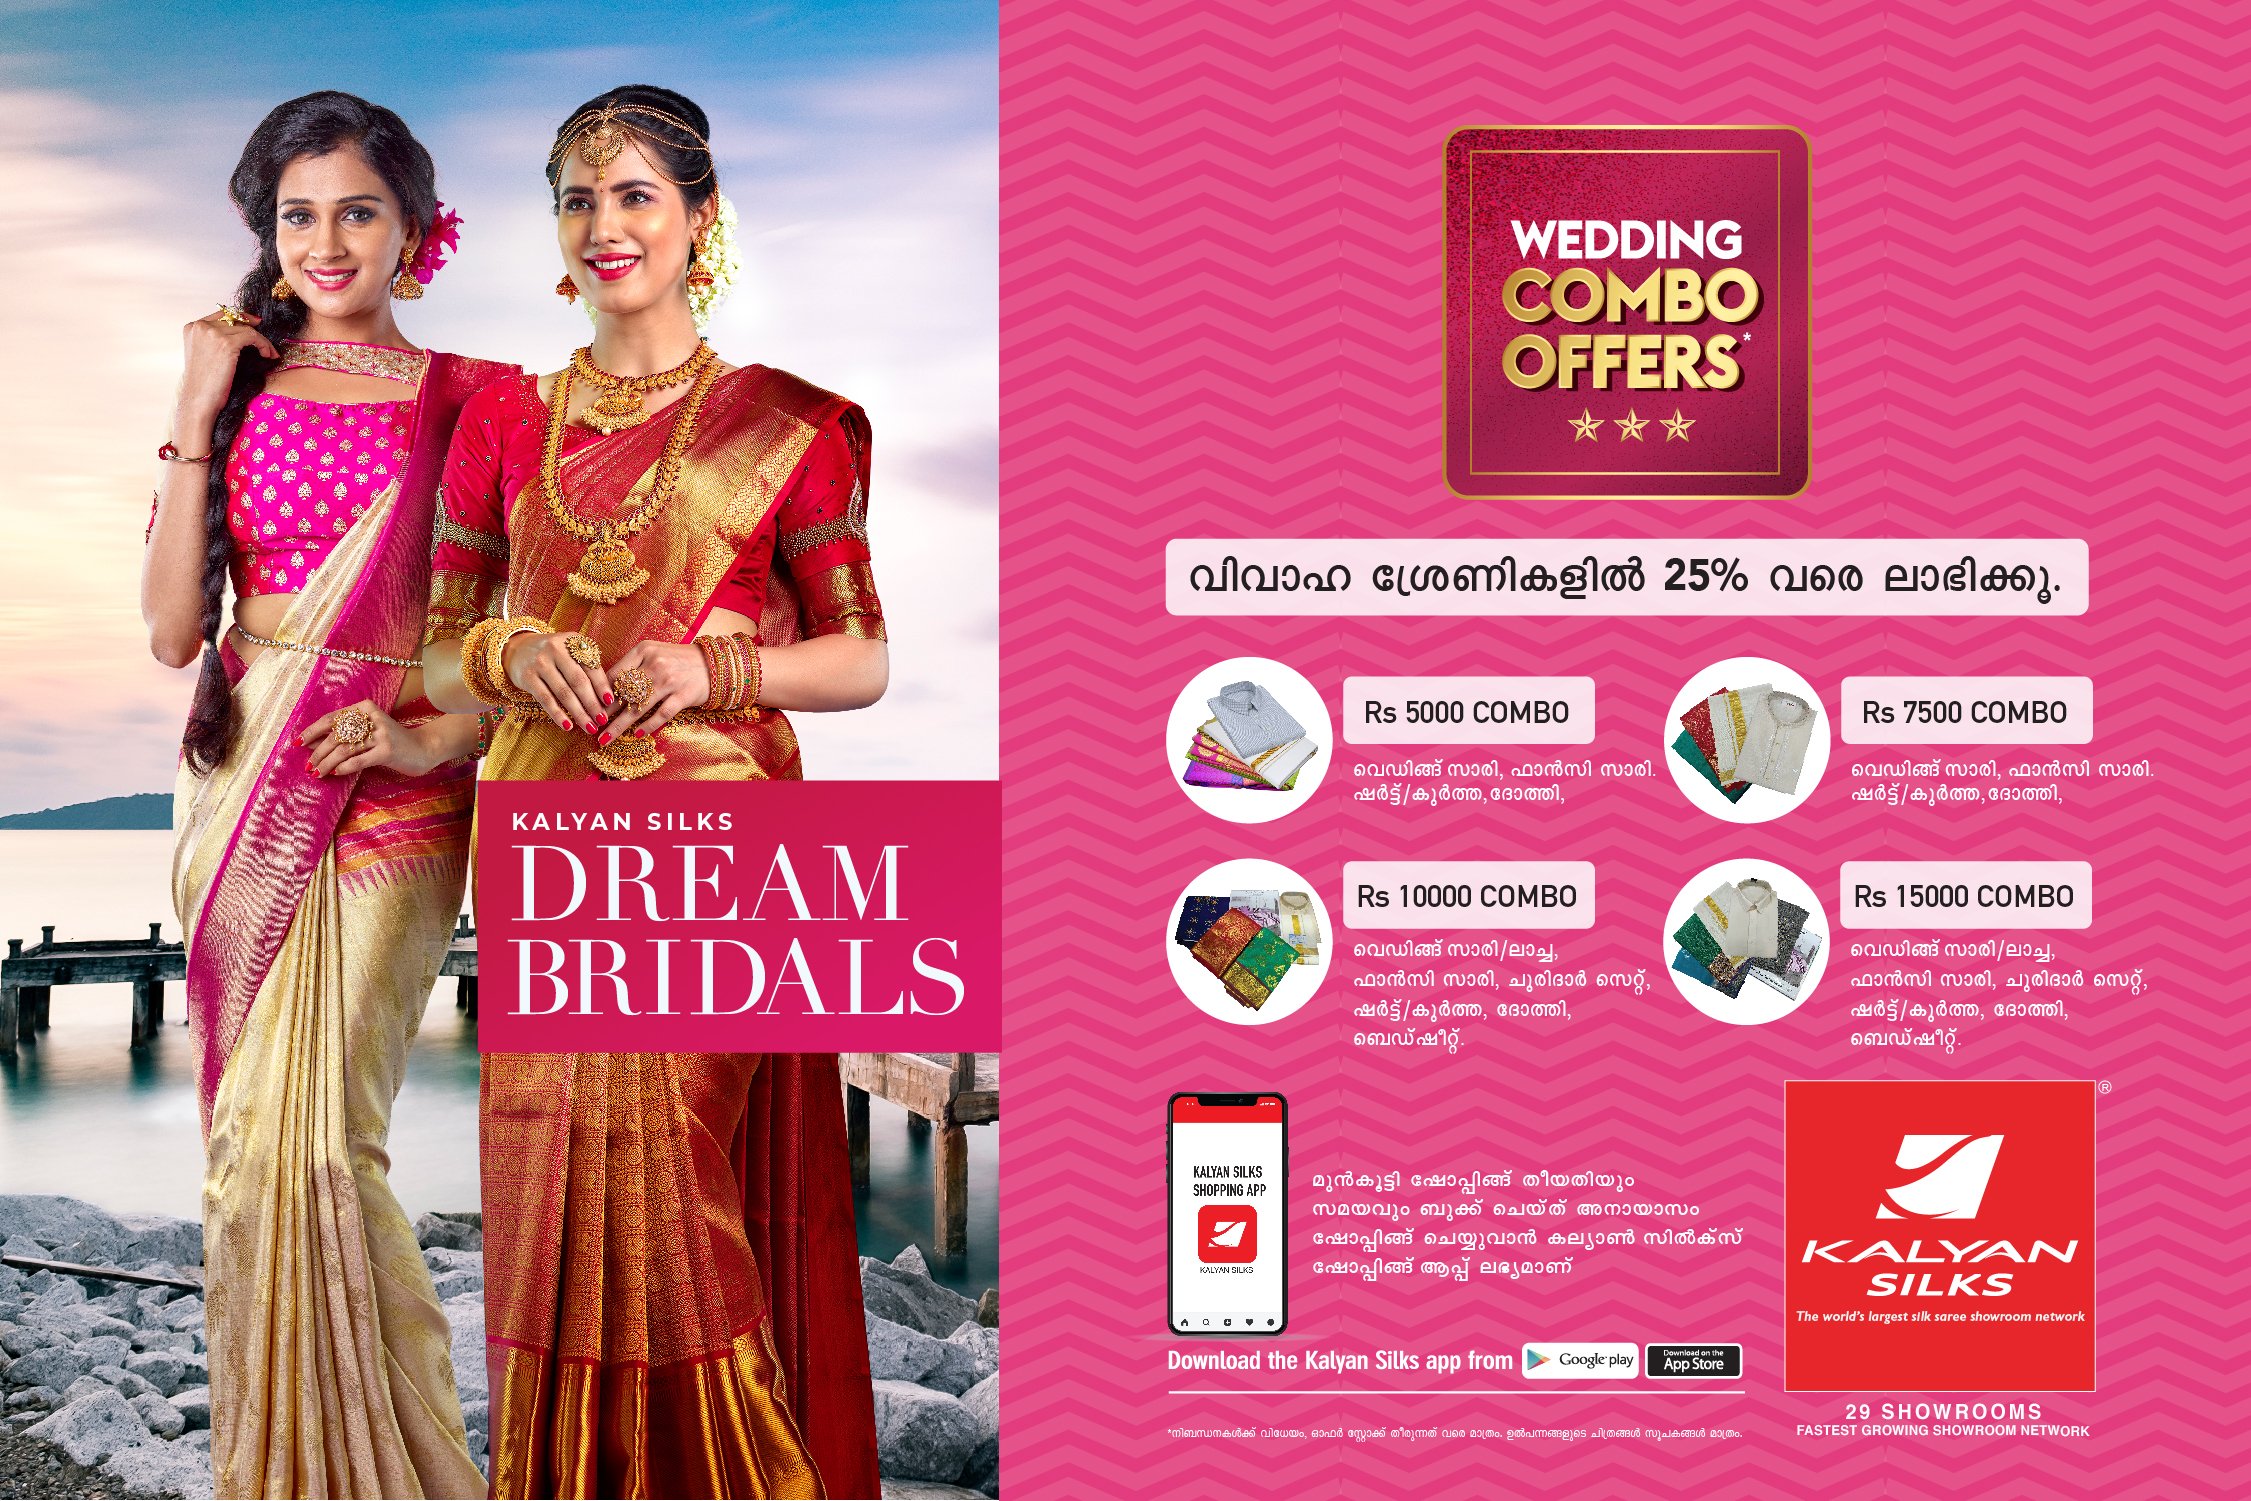 Kalyan Silks on X: Wedding Combo Offers Kalyan Silks Dream Bridals   / X